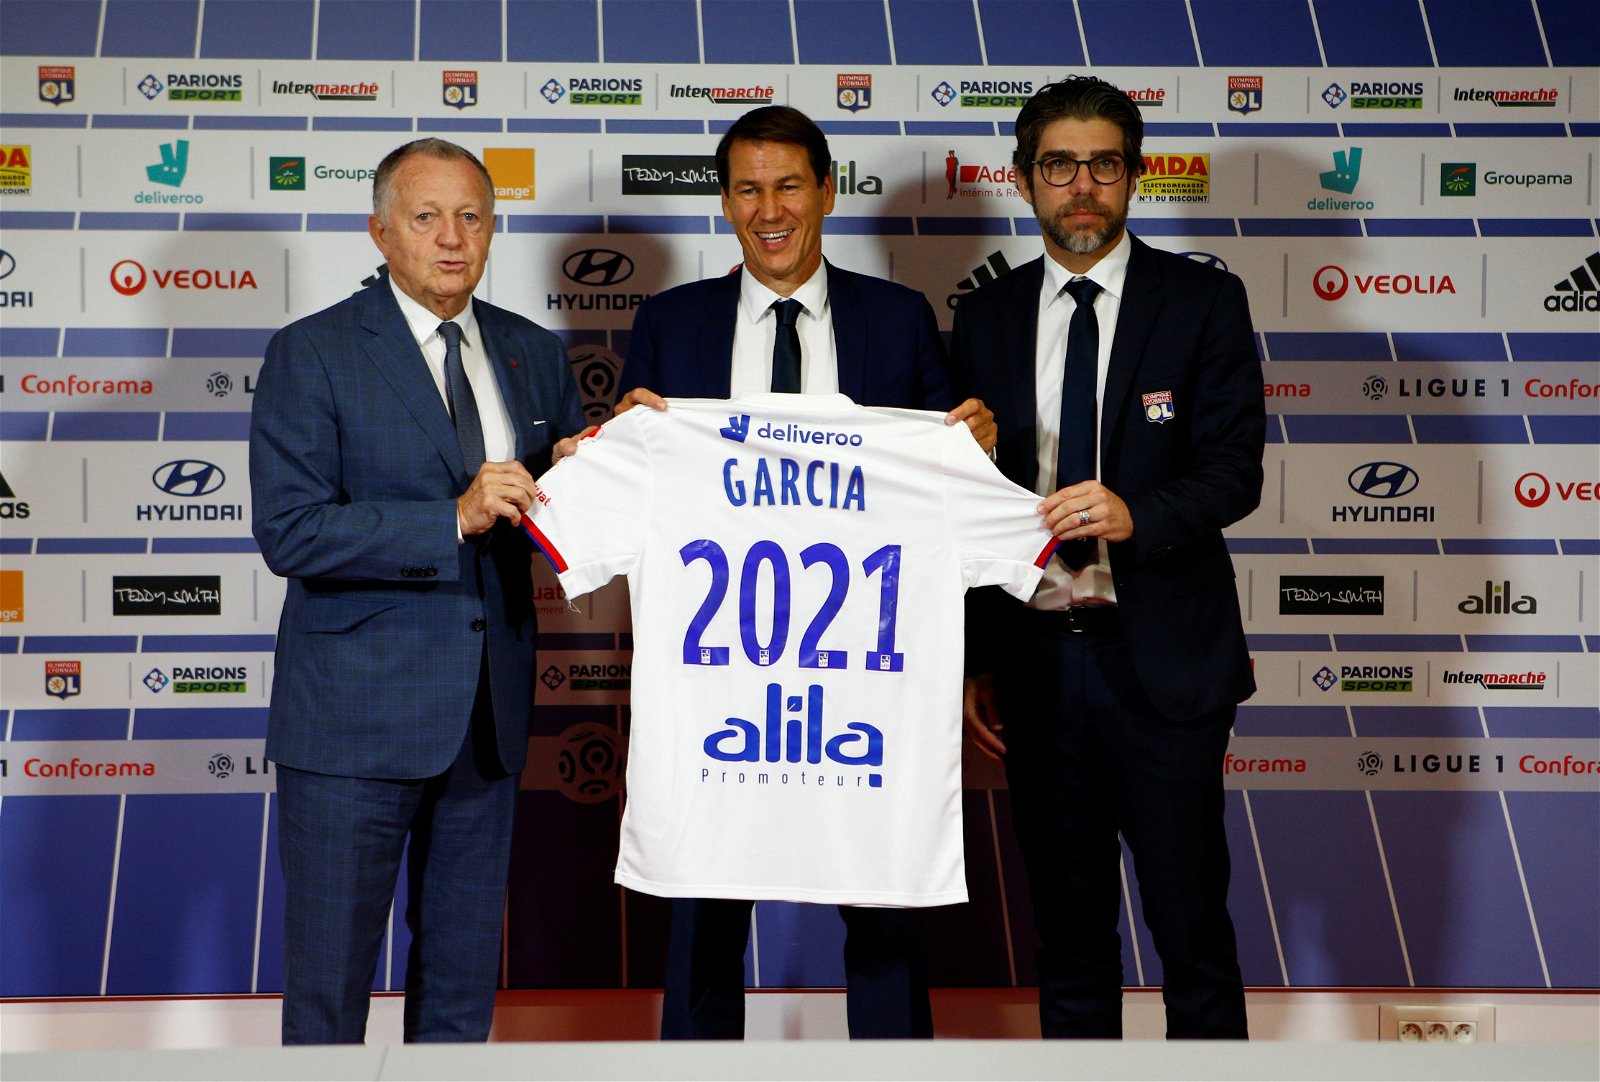 Rudi Garcia takes over Lyon as replacement for former coach Sylvinho